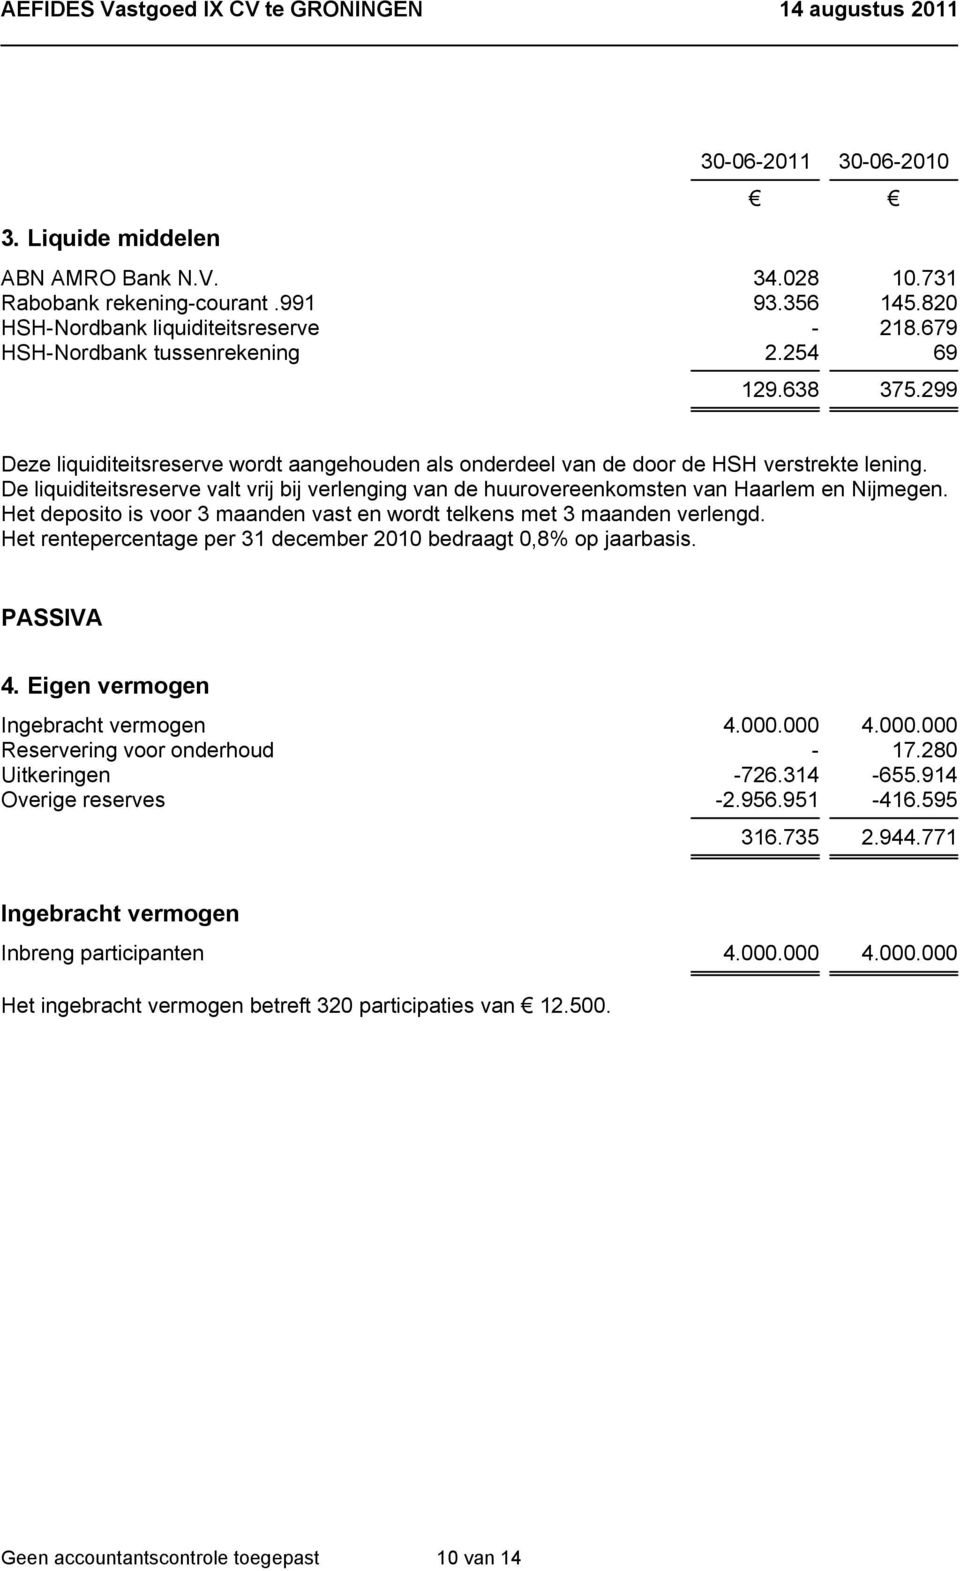 De liquiditeitsreserve valt vrij bij verlenging van de huurovereenkomsten van Haarlem en Nijmegen. Het deposito is voor 3 maanden vast en wordt telkens met 3 maanden verlengd.